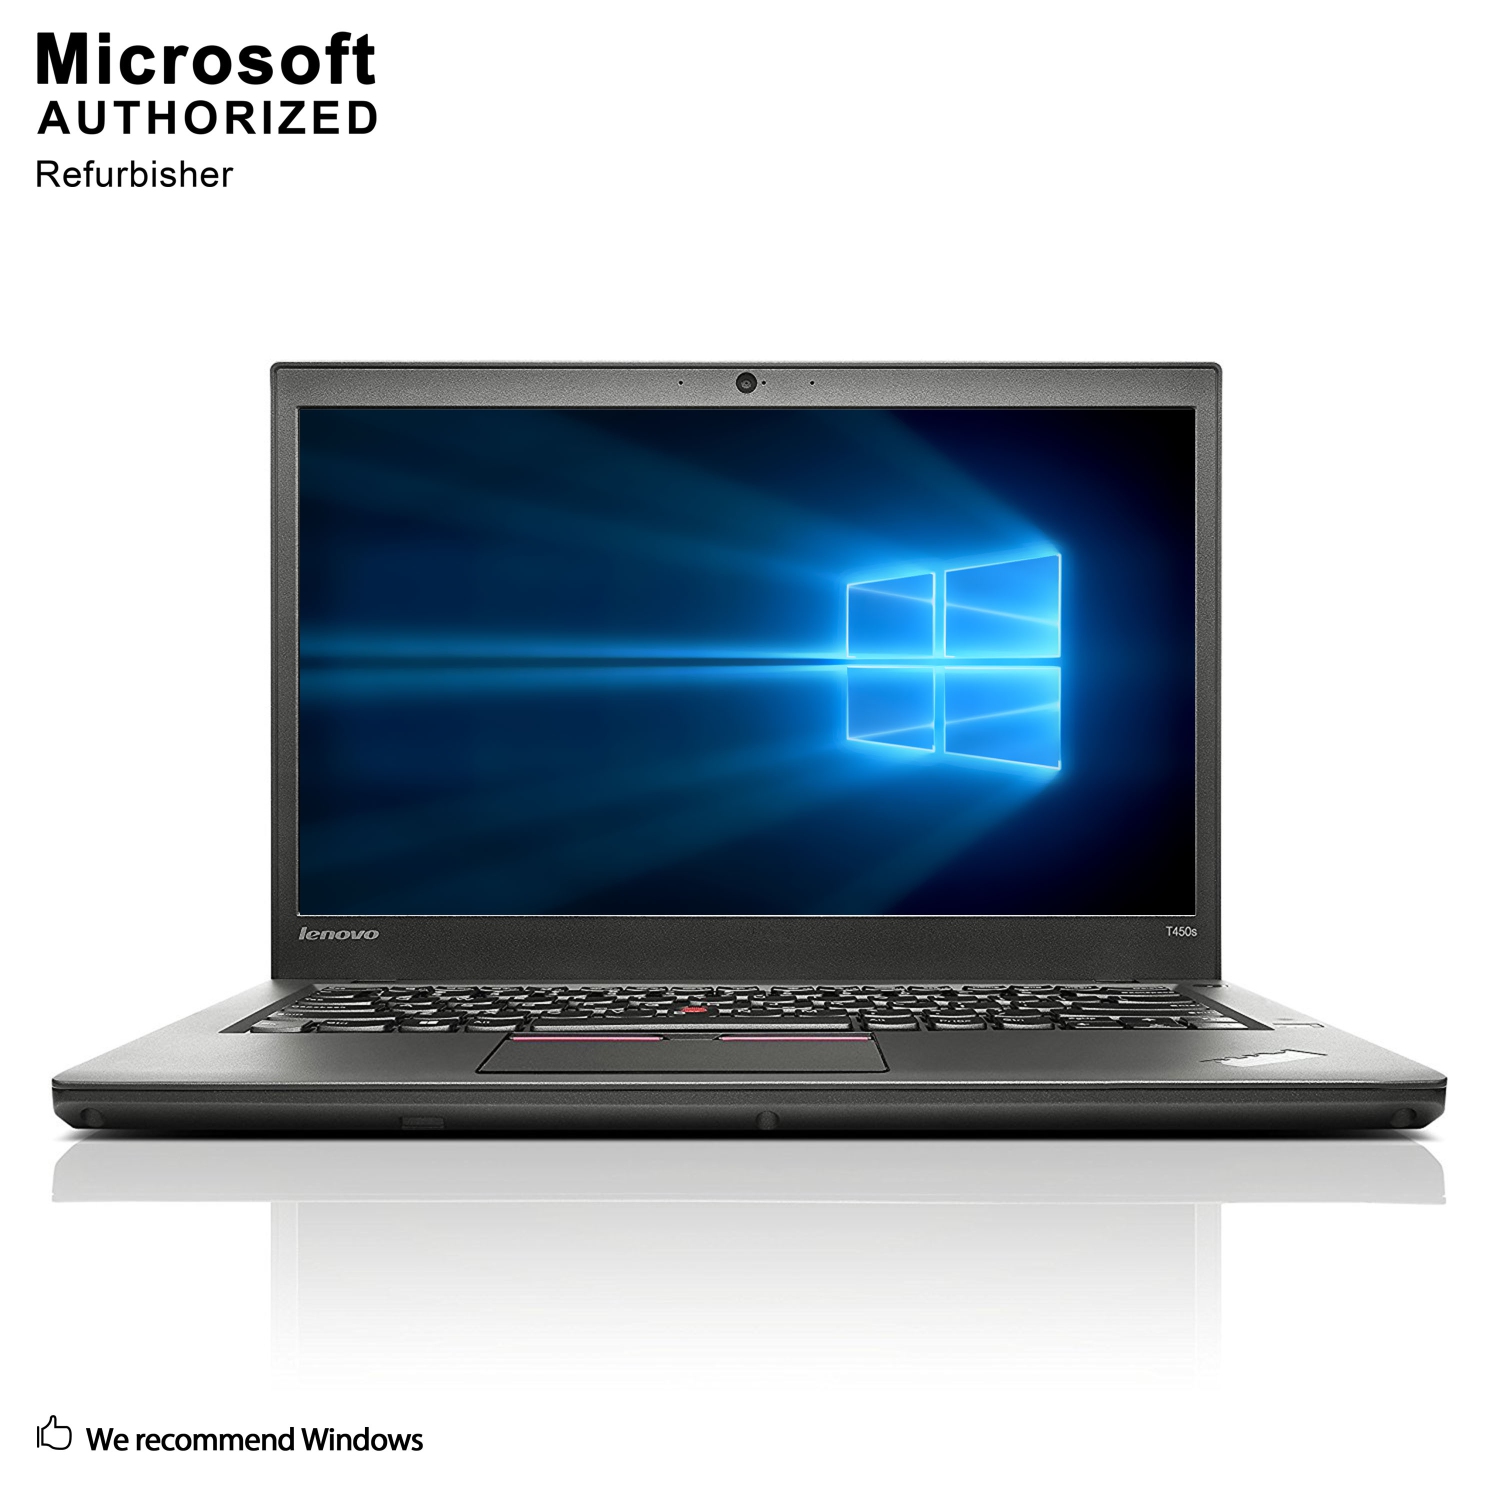 Refurbished (Excellent) - Lenovo ThinkPad T450s 14" Laptop, Intel Core i5 5300U up to 2.9G, 8G DDR3L, 1T, Windows 10 Home 64 Bit (EN/FR/ES)